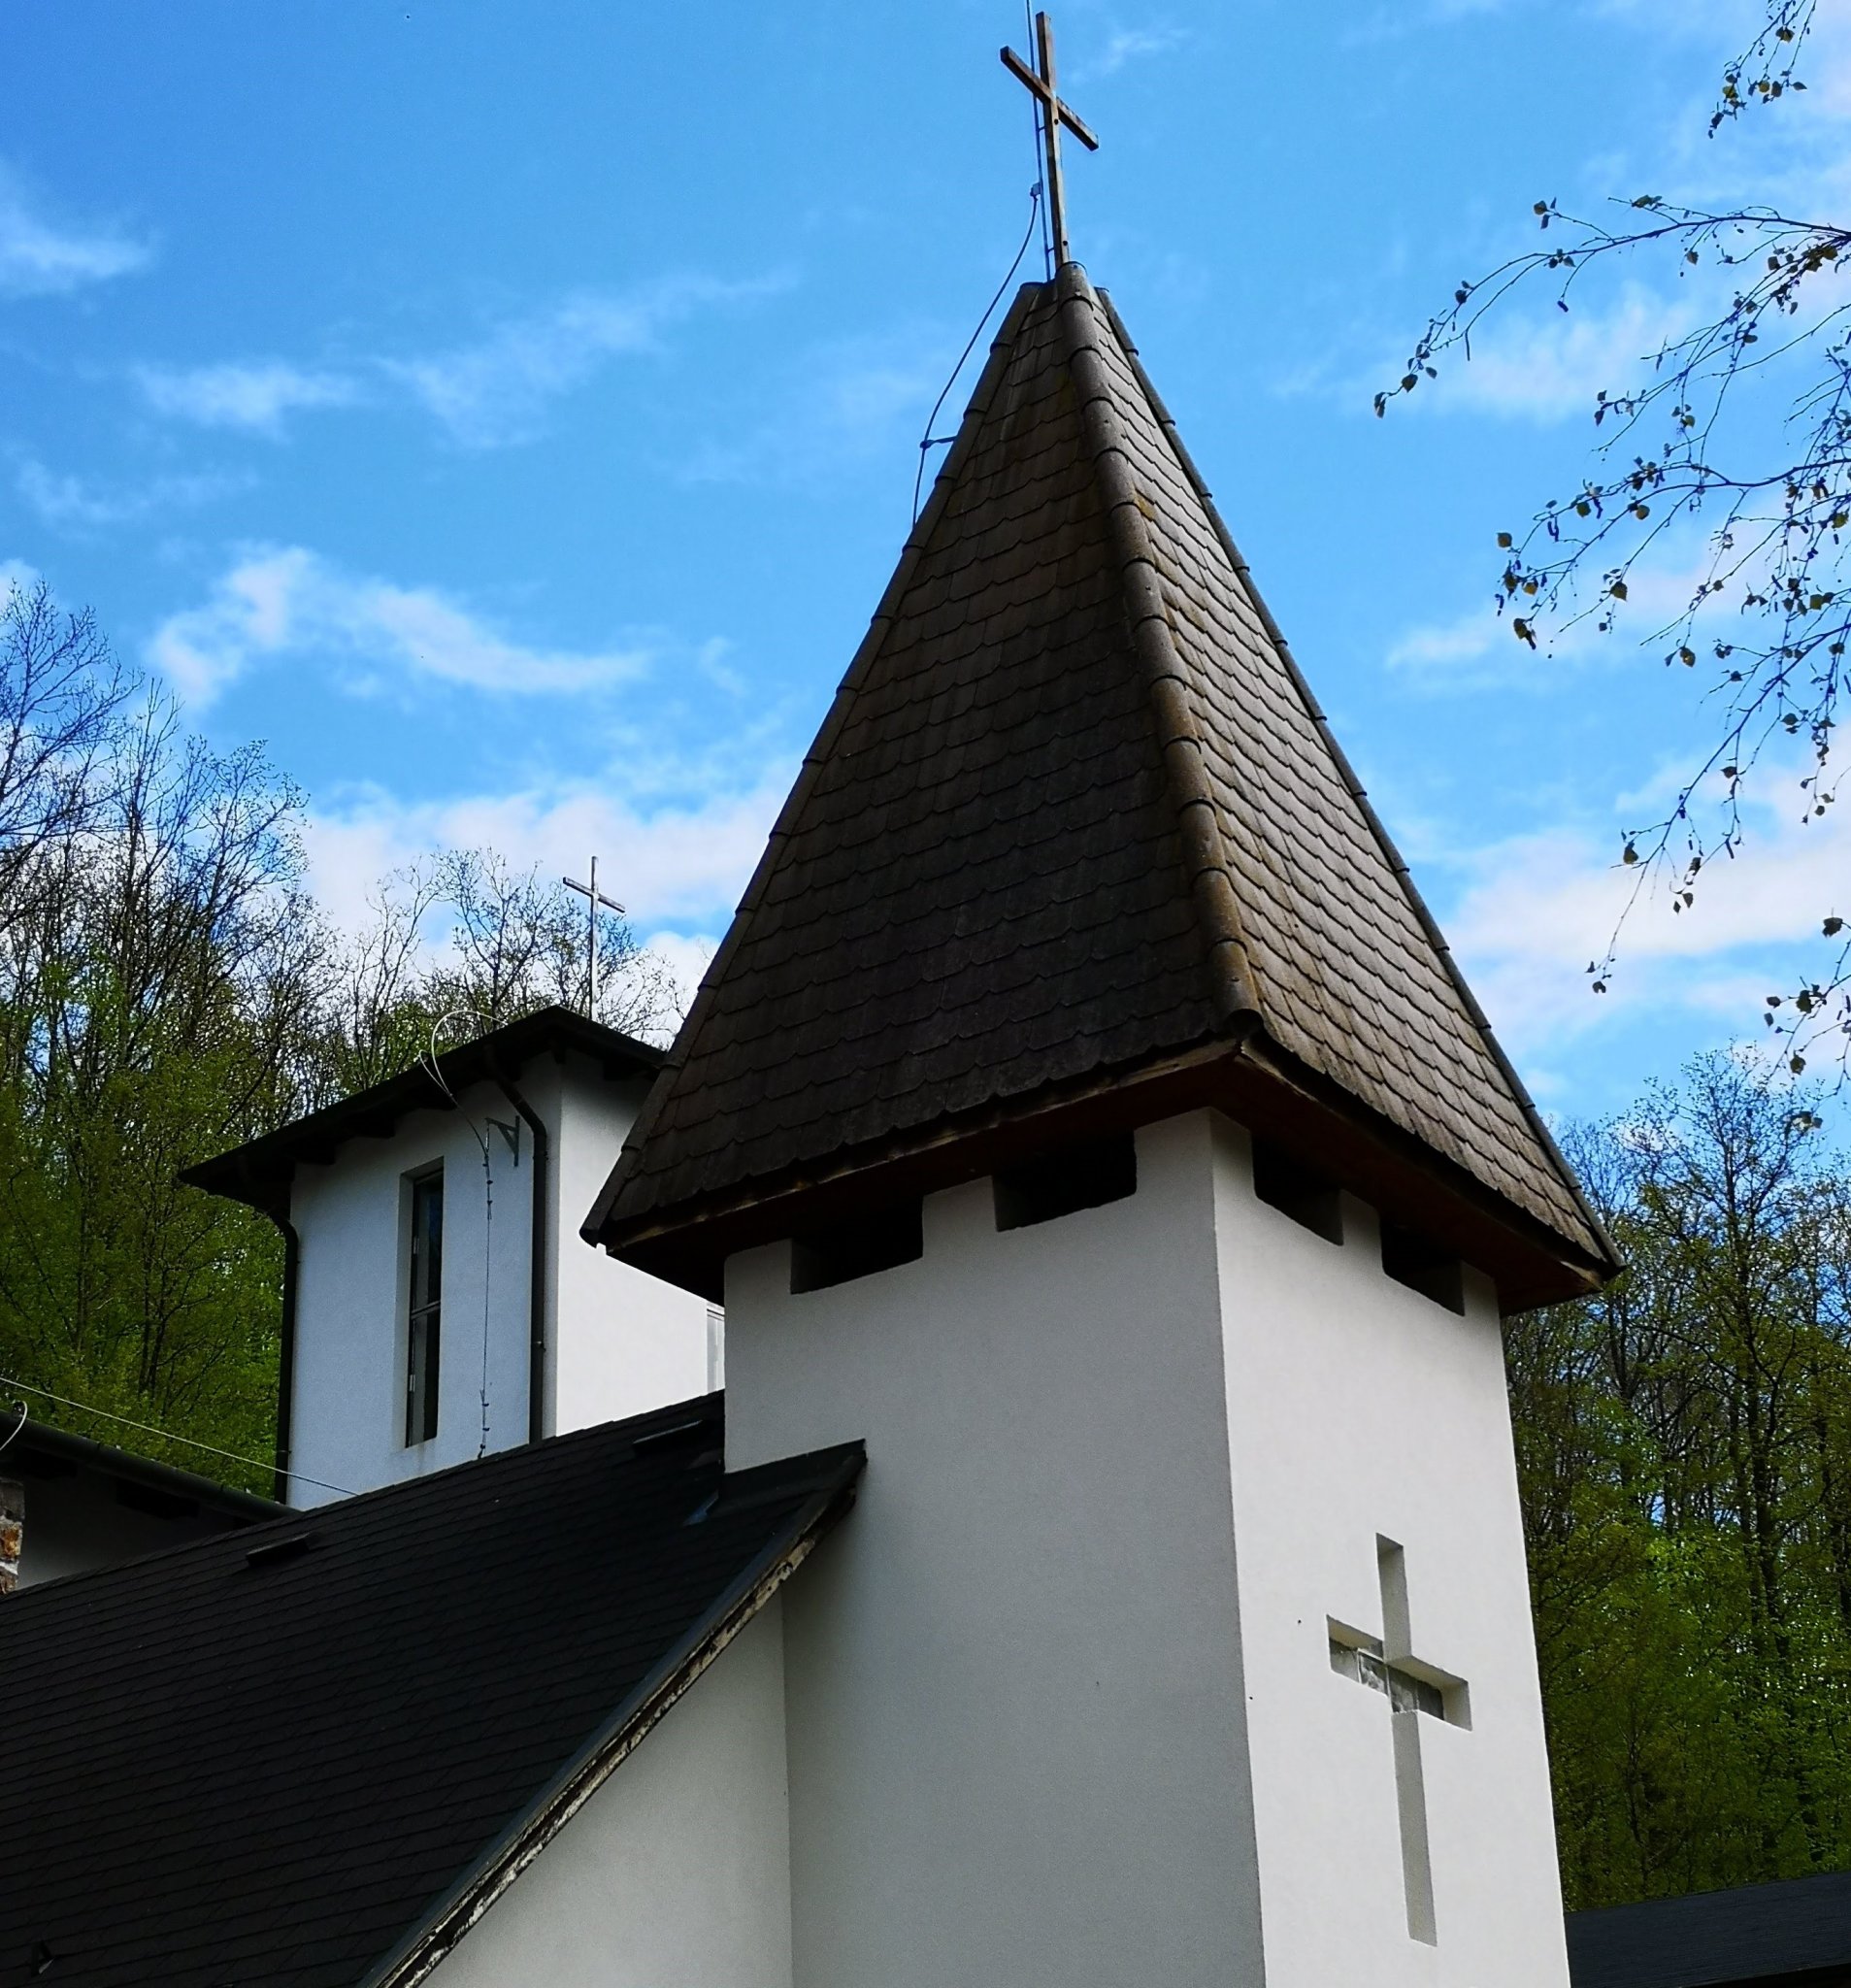 Húsvét margójára …avagy hogyan lettem partizán keresztény